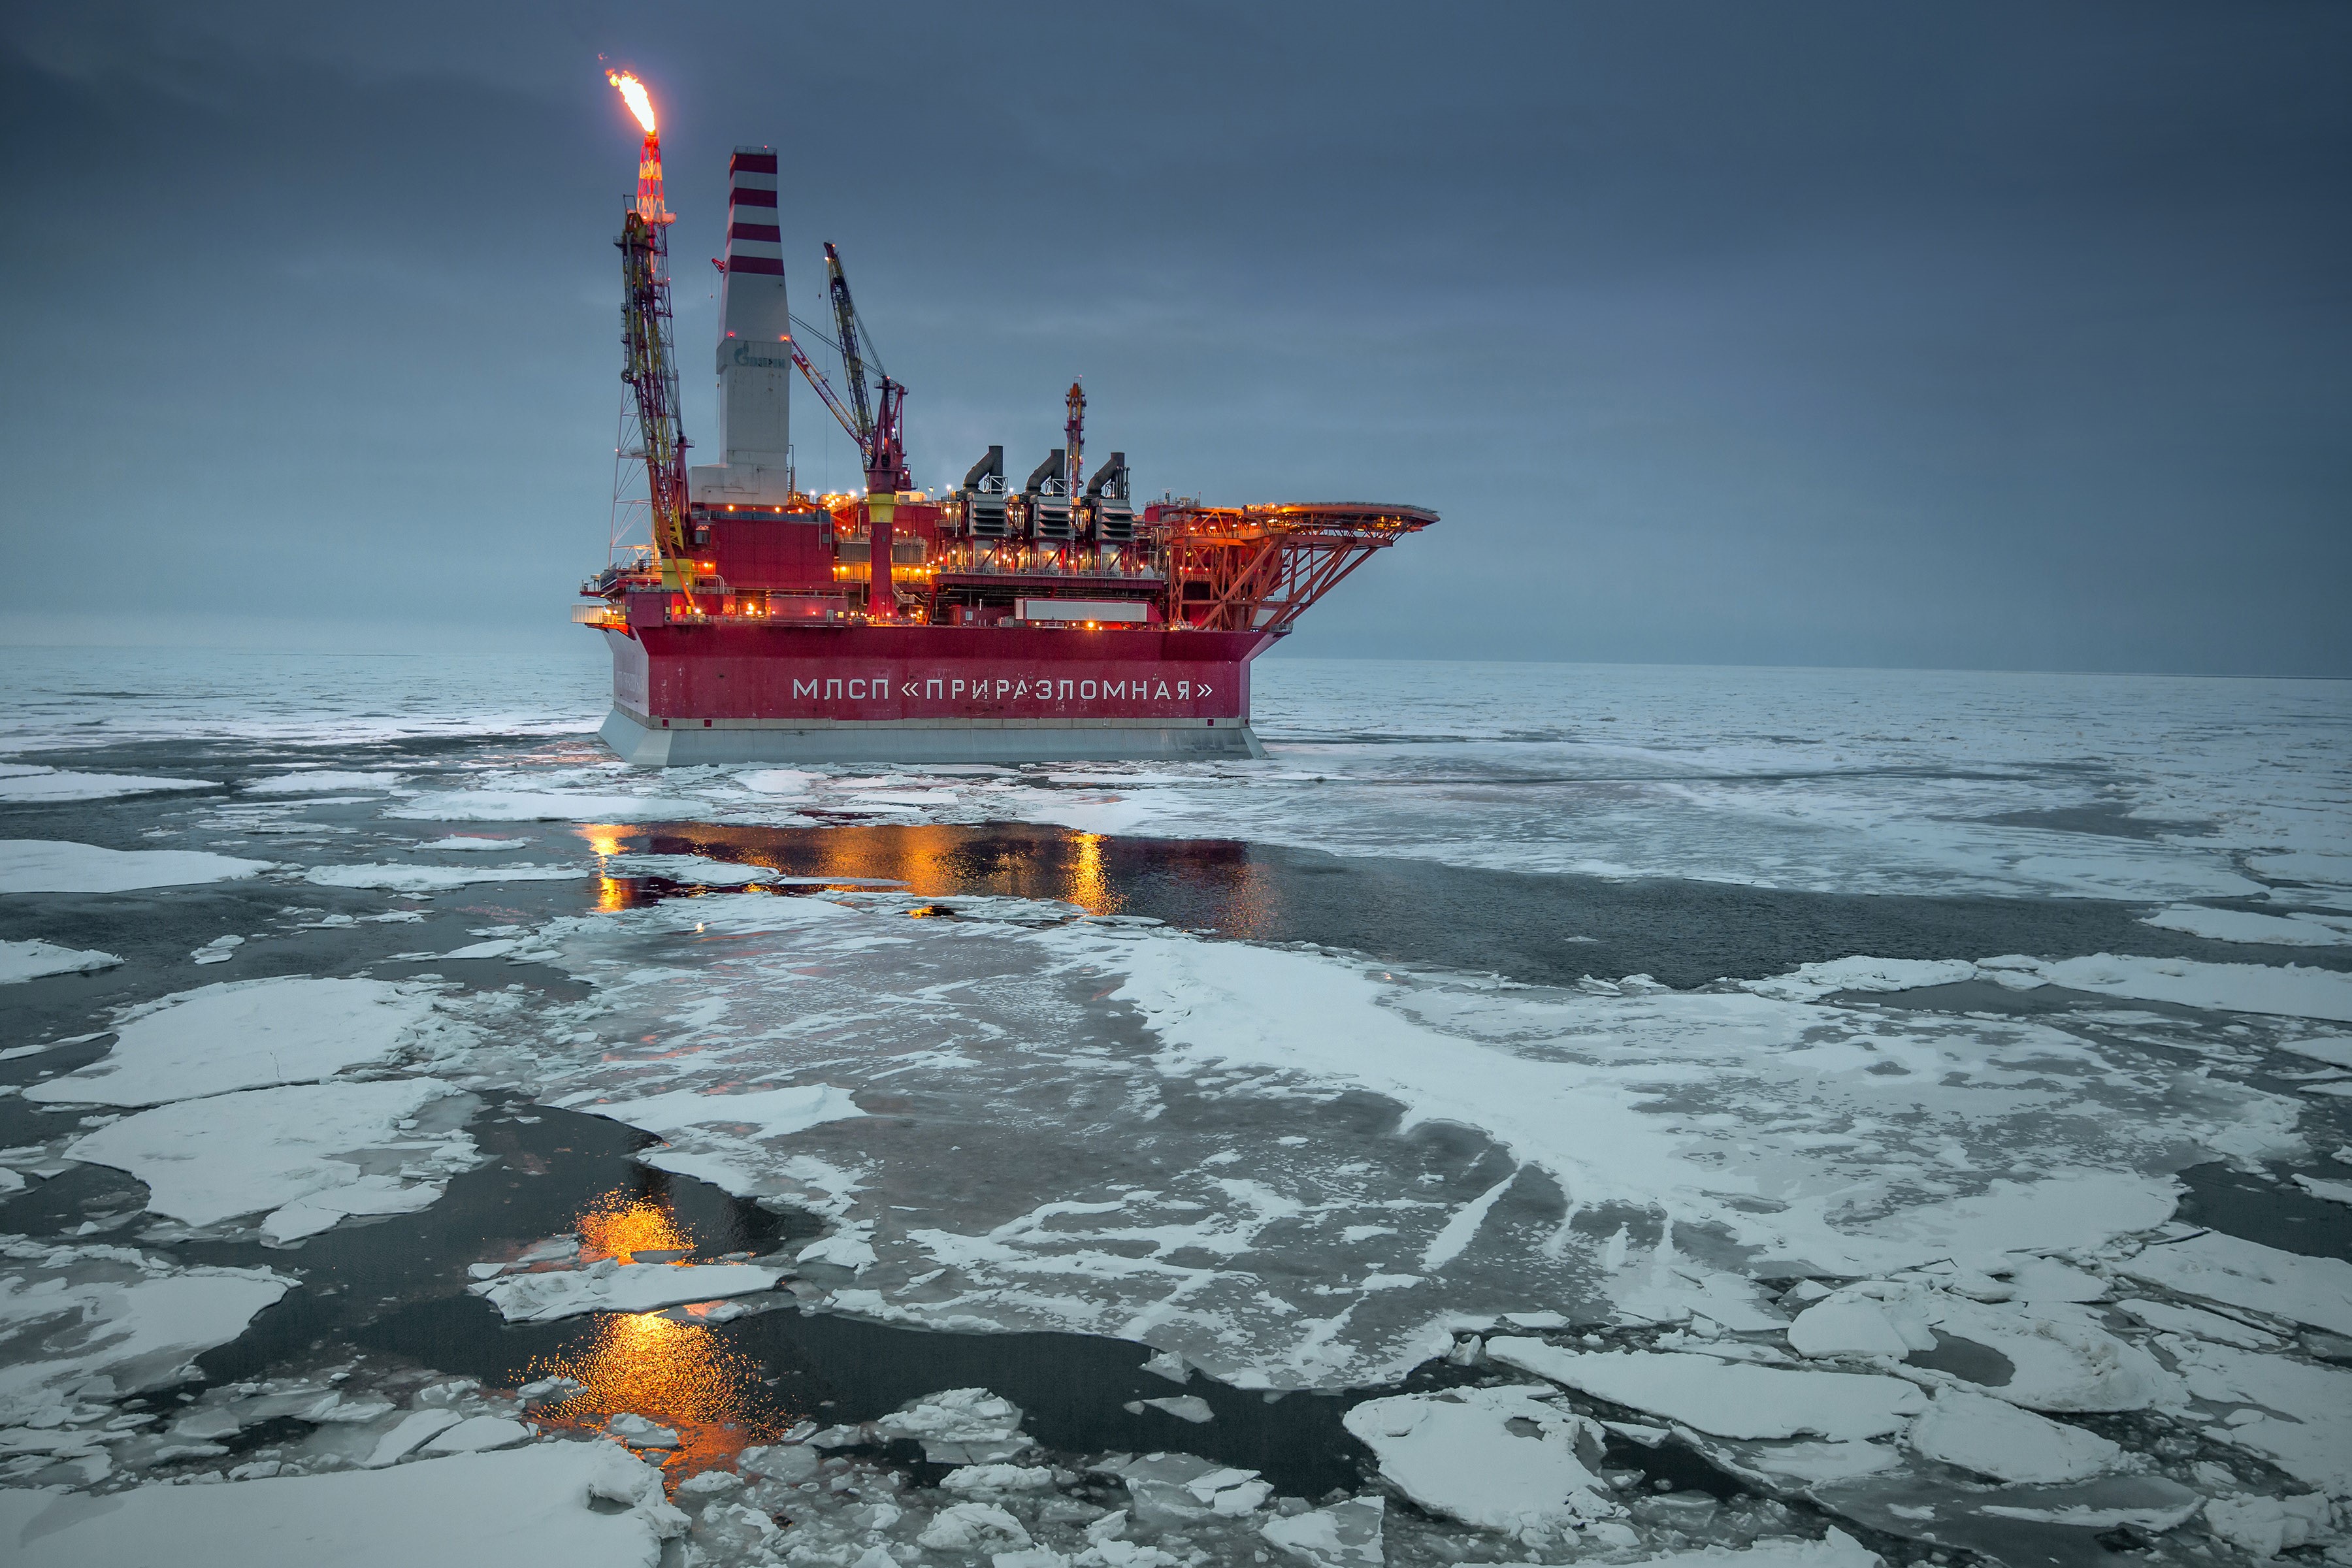  Nga hiện đang đẩy mạnh hoạt động khai thác dầu tại khu vực Đông Sibera và khu vực thềm lục địa Bắc Cực